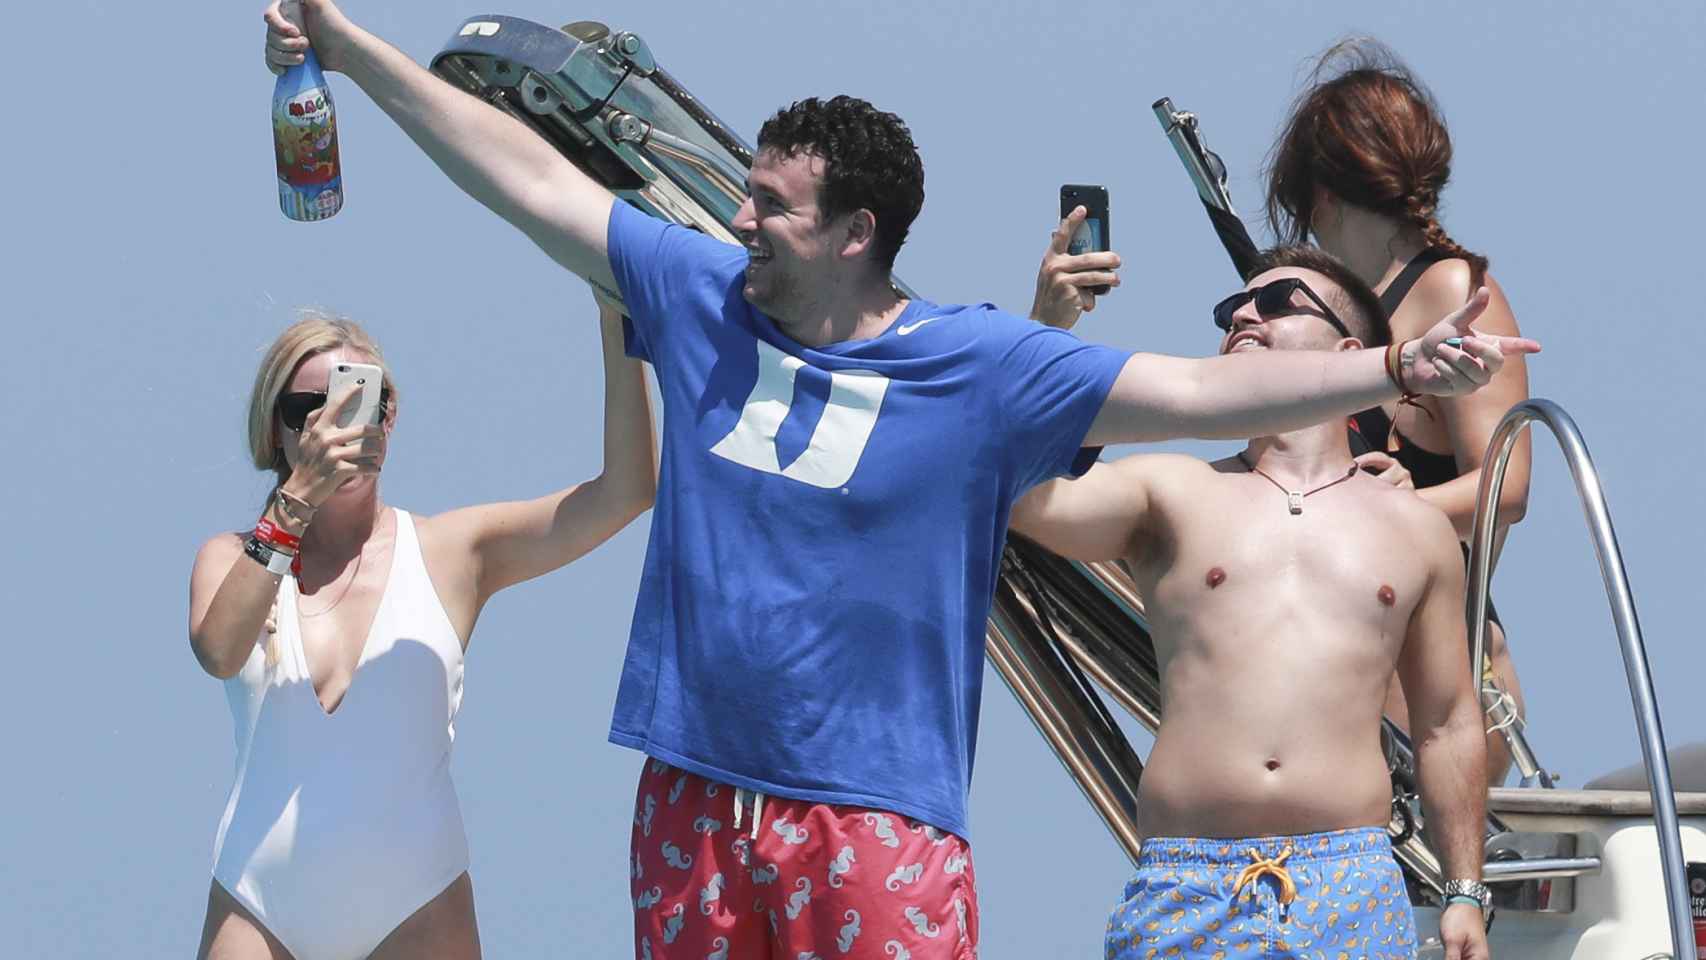 Álex Lequio en julio de 2019 festejando con sus amigos a bordo de un barco en Ibiza.